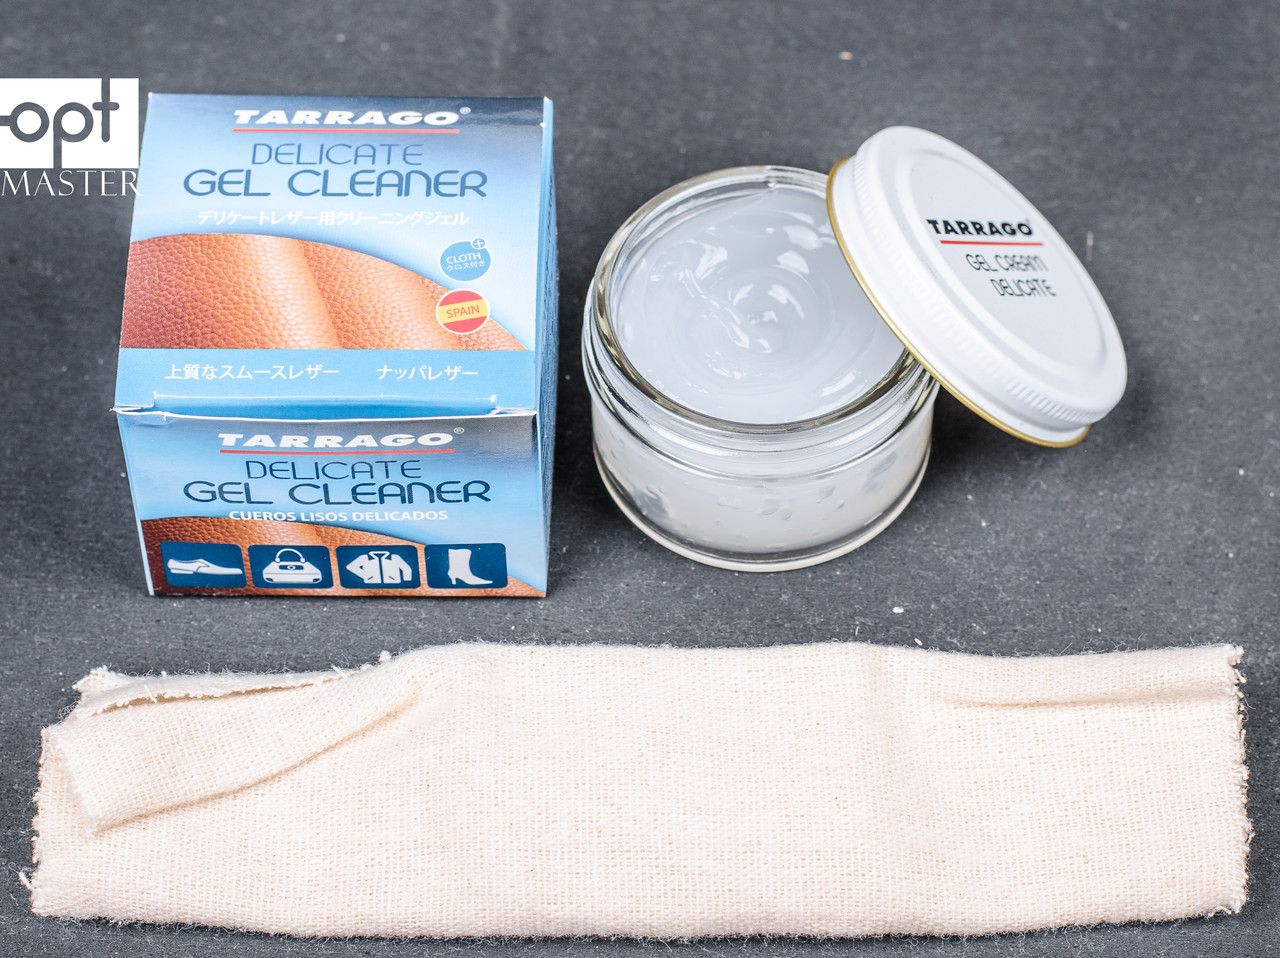 Очищающий гель для деликатных кож Tarrago Delicate Gel Cleaner Jar, 50 мл,  бесцветный TCT05: купить, продажа, цена в Украине. крема и пропитки для  обуви от компании 